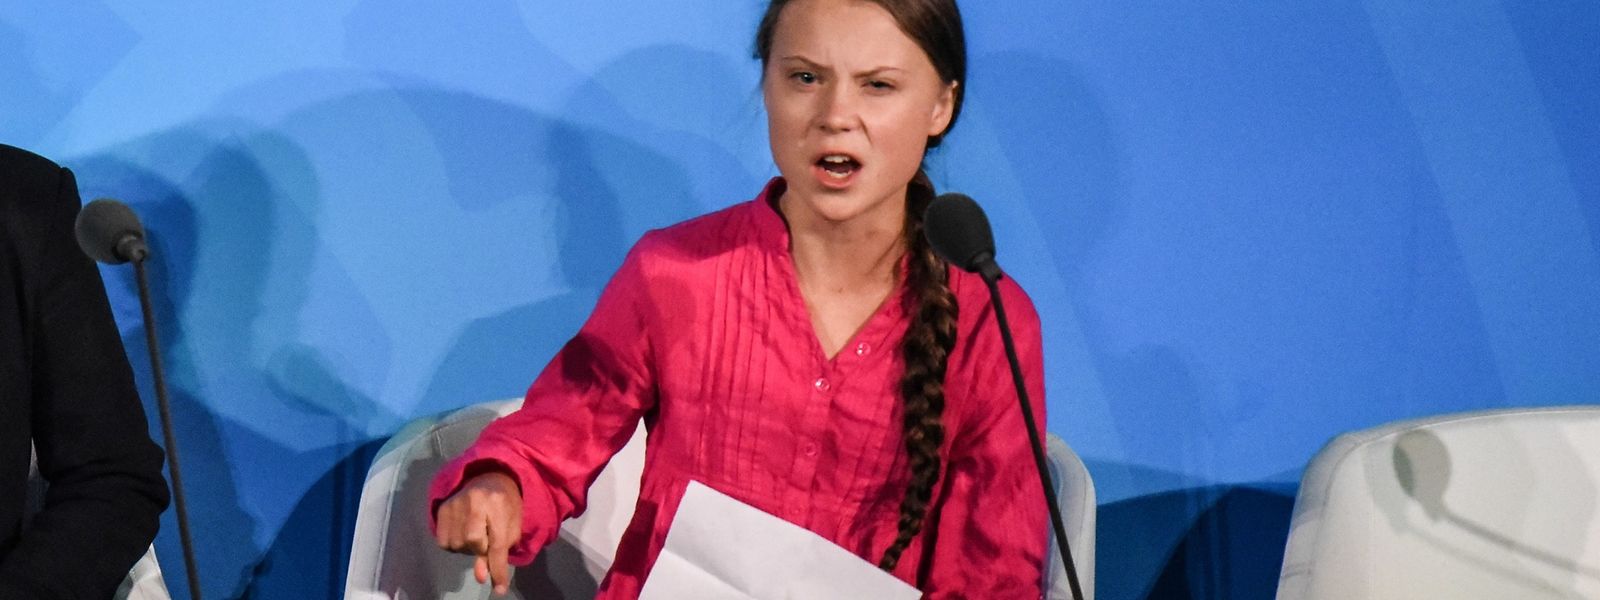 Aktivistin Greta Thunberg während ihrer Rede beim Gipfel.